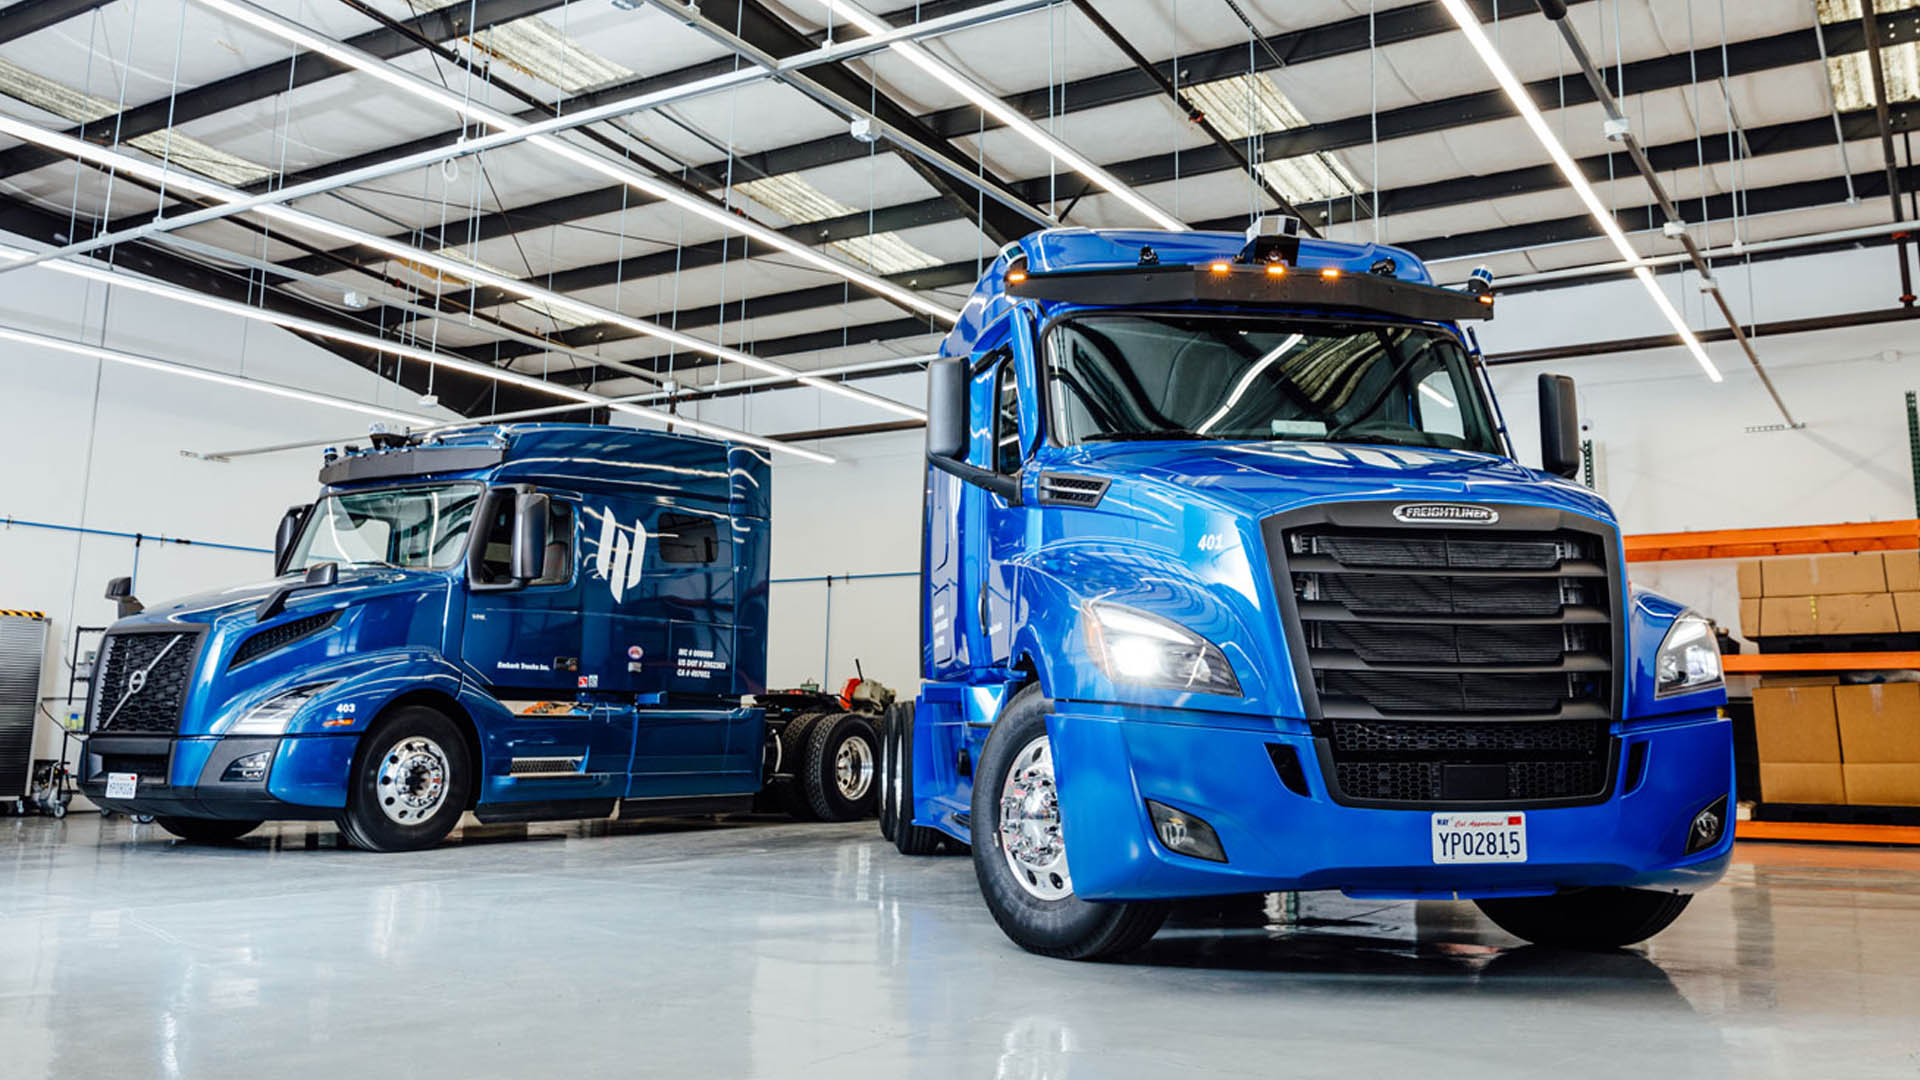 Embark Trucks tallies 14,200 prelaunch reservations for driverless software  - FreightWaves